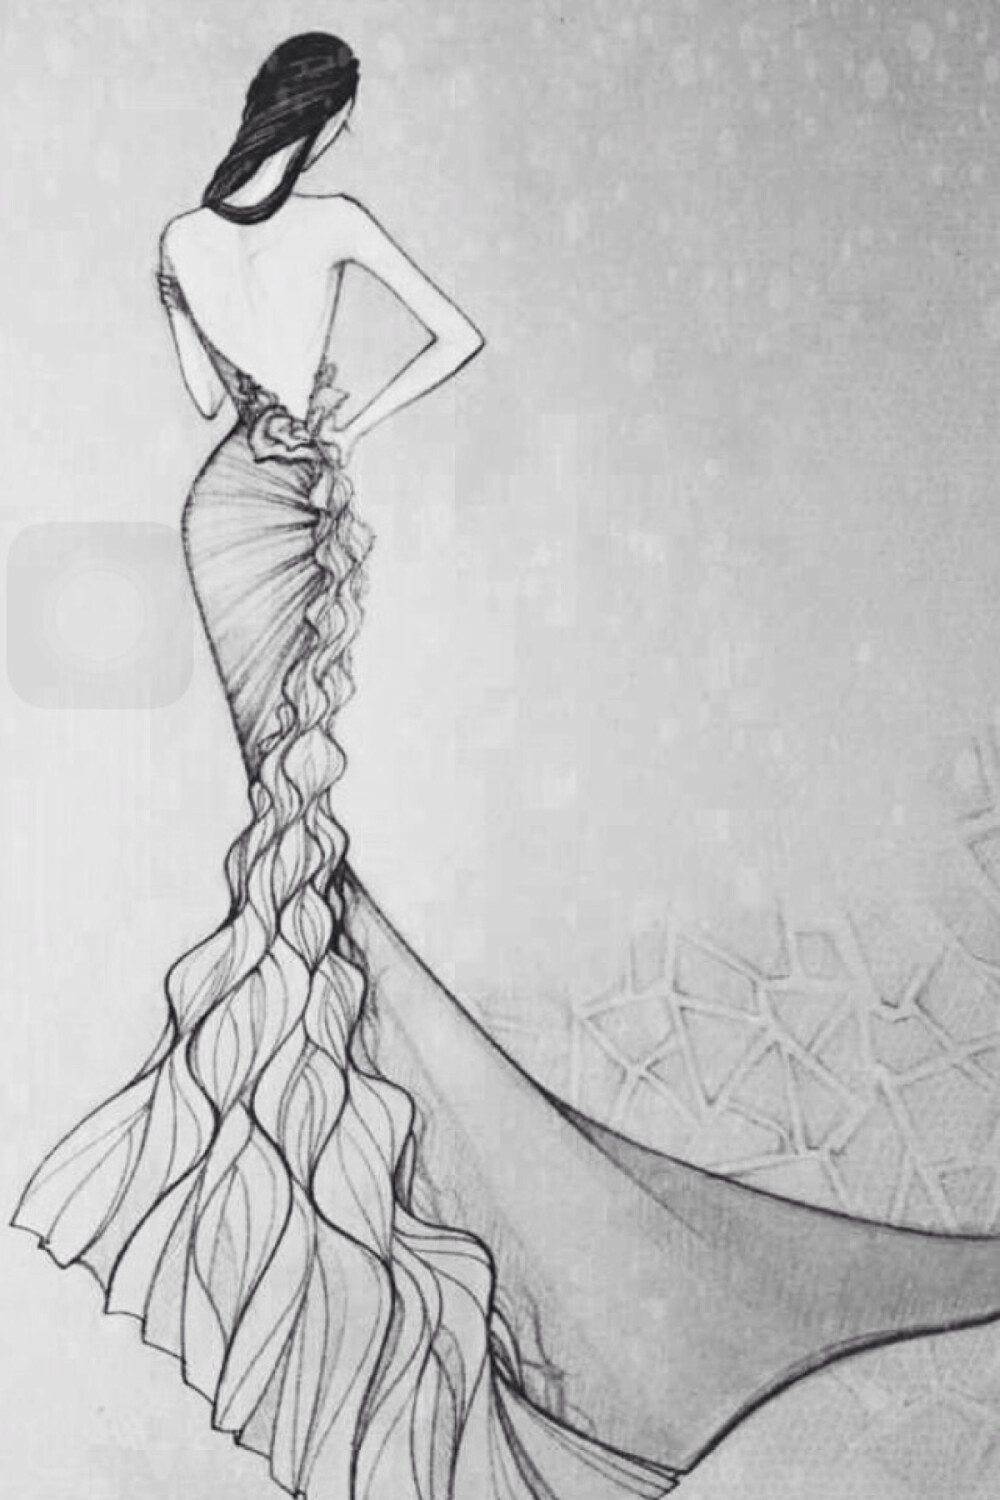 【简单黑白】 时装设计插画手稿 婚纱 手绘 铅笔画 lan yu